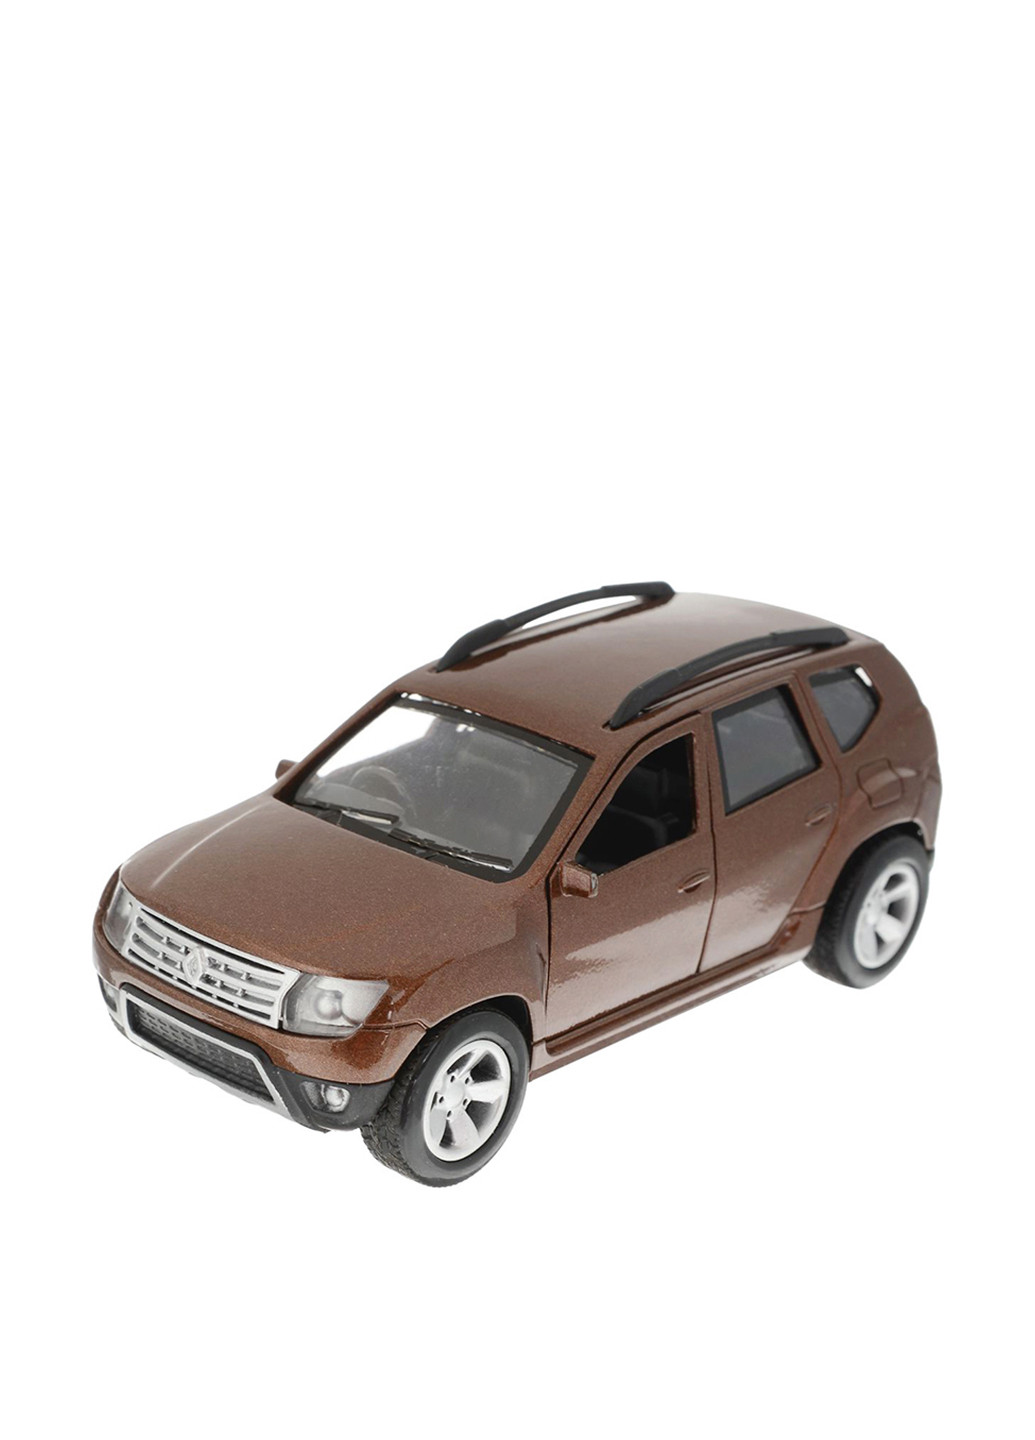 Автомодель - renault duster-m (1:32, коричневый) Технопарк (155062341)